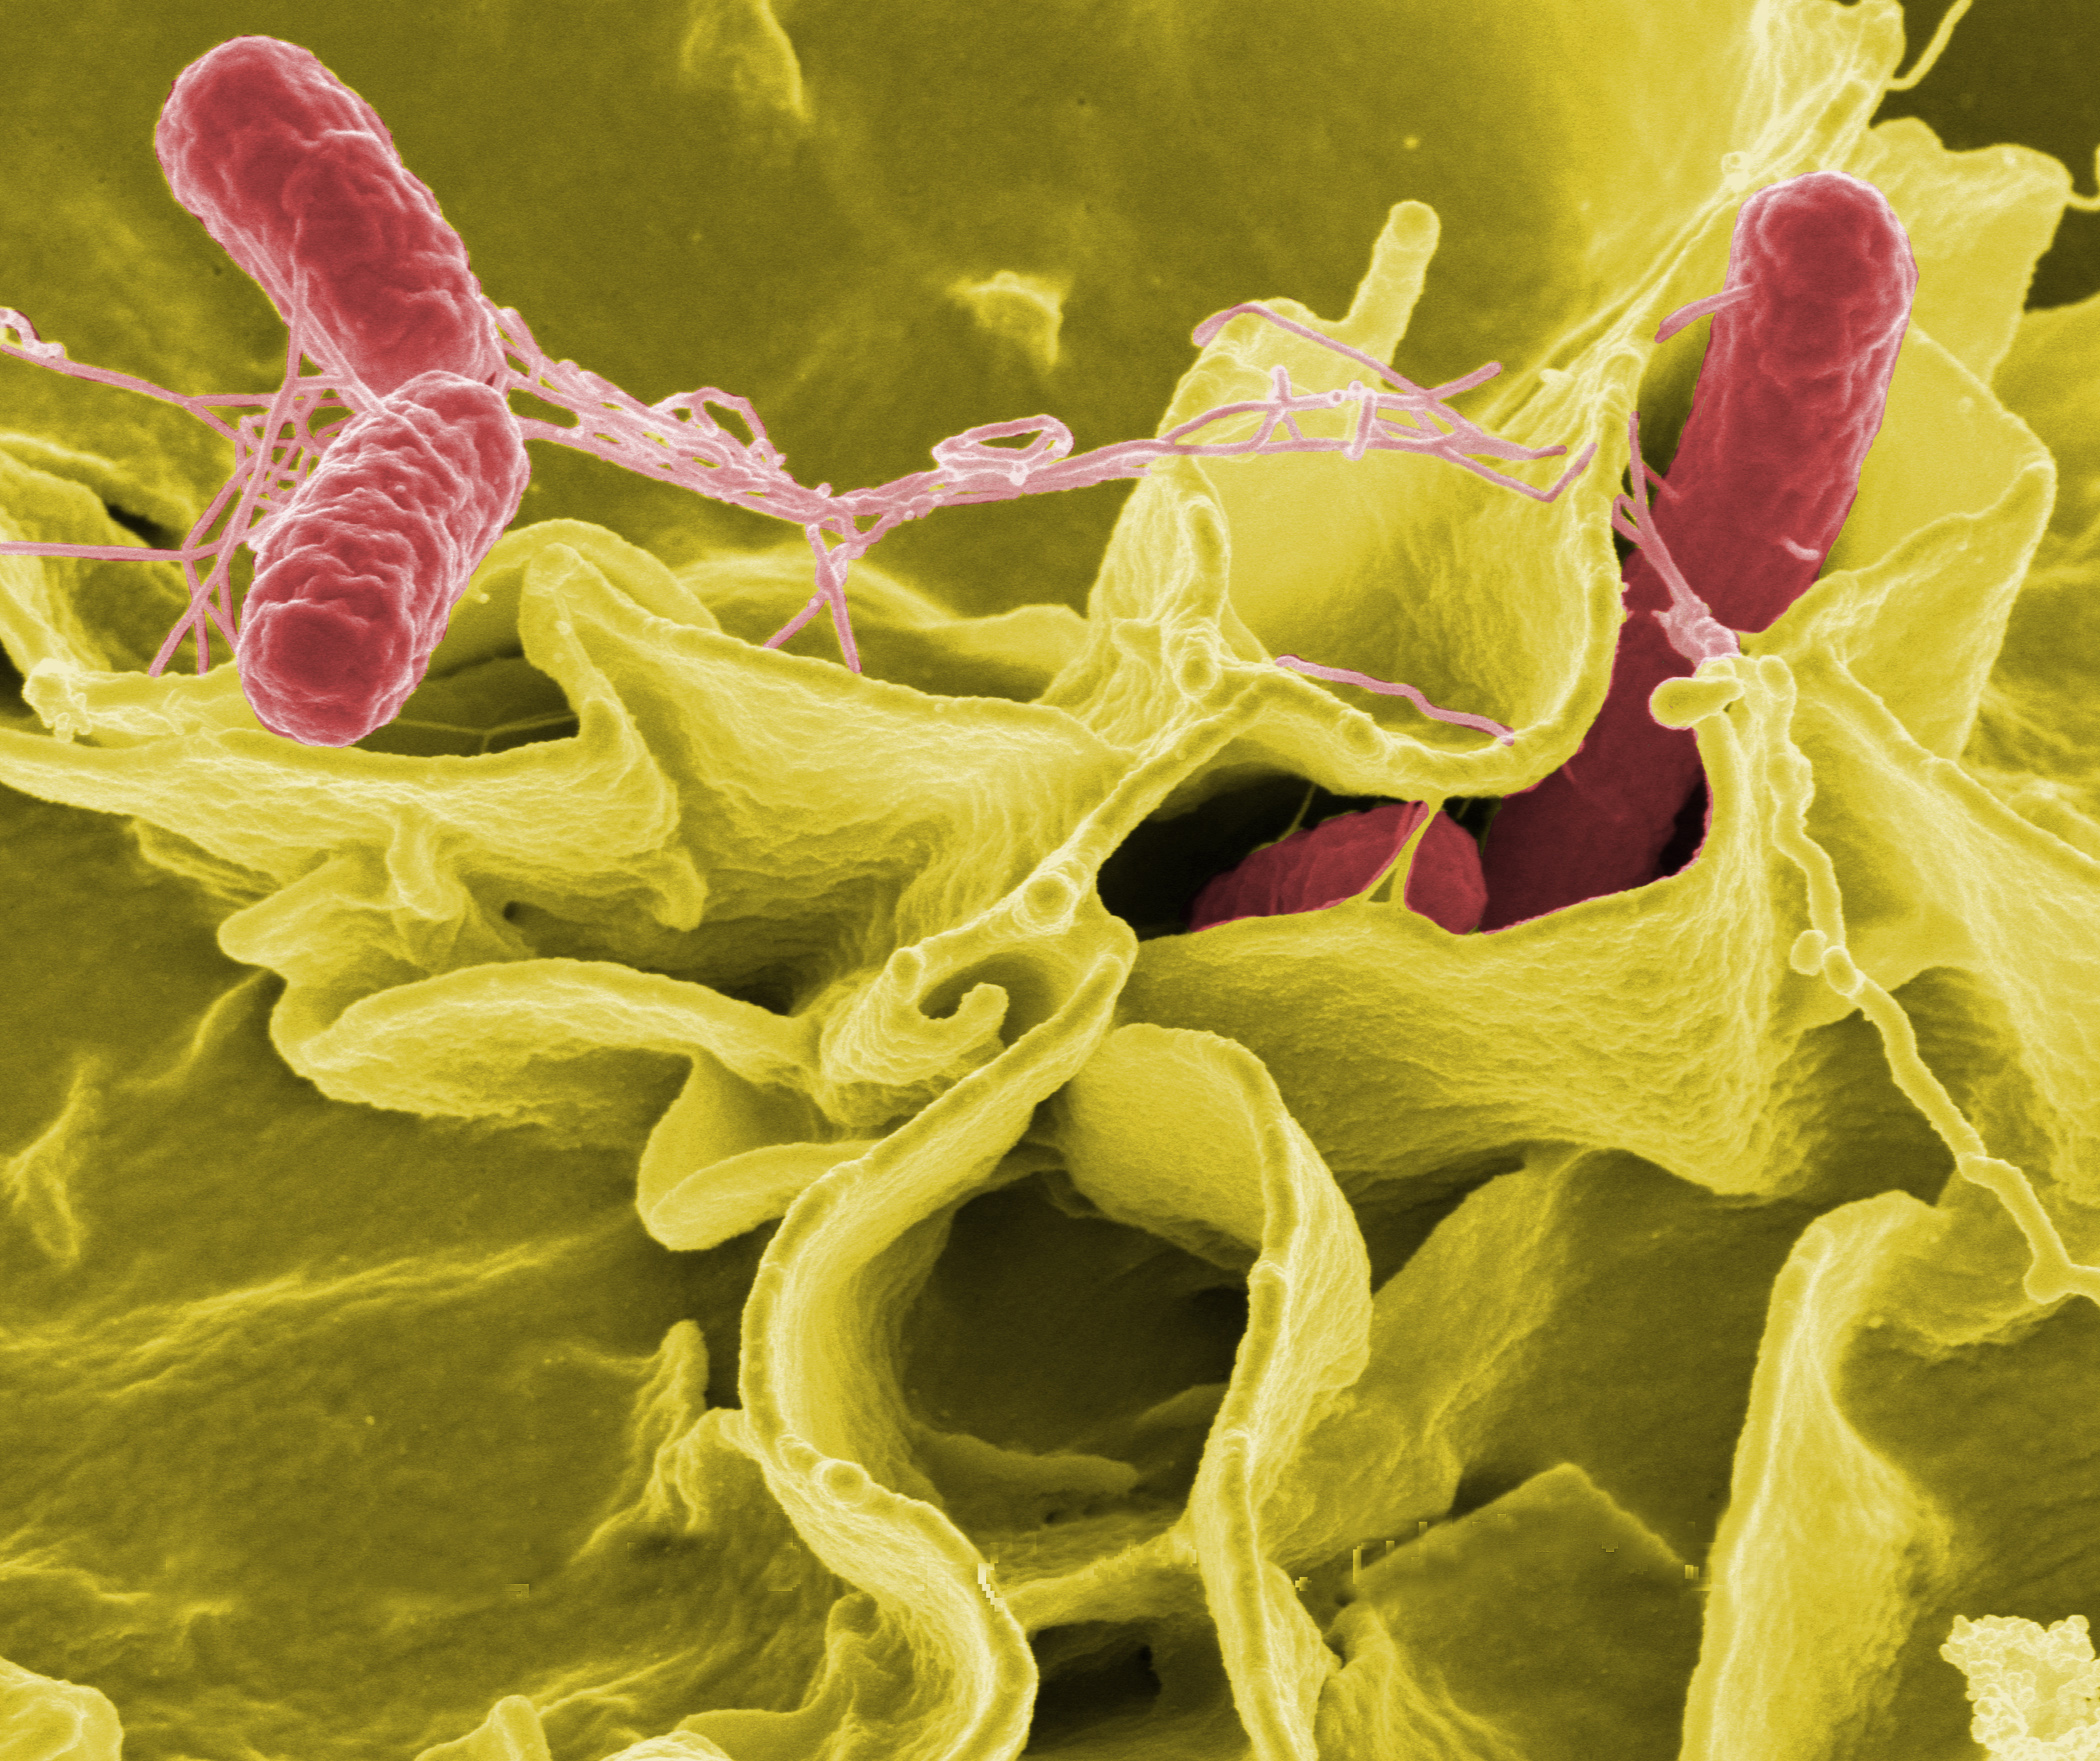 La résistance aux antibiotiques se généralise. Par exemple, 80 % des souches responsables de la gonorrhée sont insensibles à la tétracycline, un traitement de première ligne. Même les médicaments les plus puissants, comme les carbapénèmes, commencent à montrer des signes de faiblesse. Au Royaume-Uni en 2003, on a noté trois cas de bactéries tolérantes à ces composés. Ici au microscope des Salmonella typhimurium, en rouge, sur une culture de cellules humaines. © DP